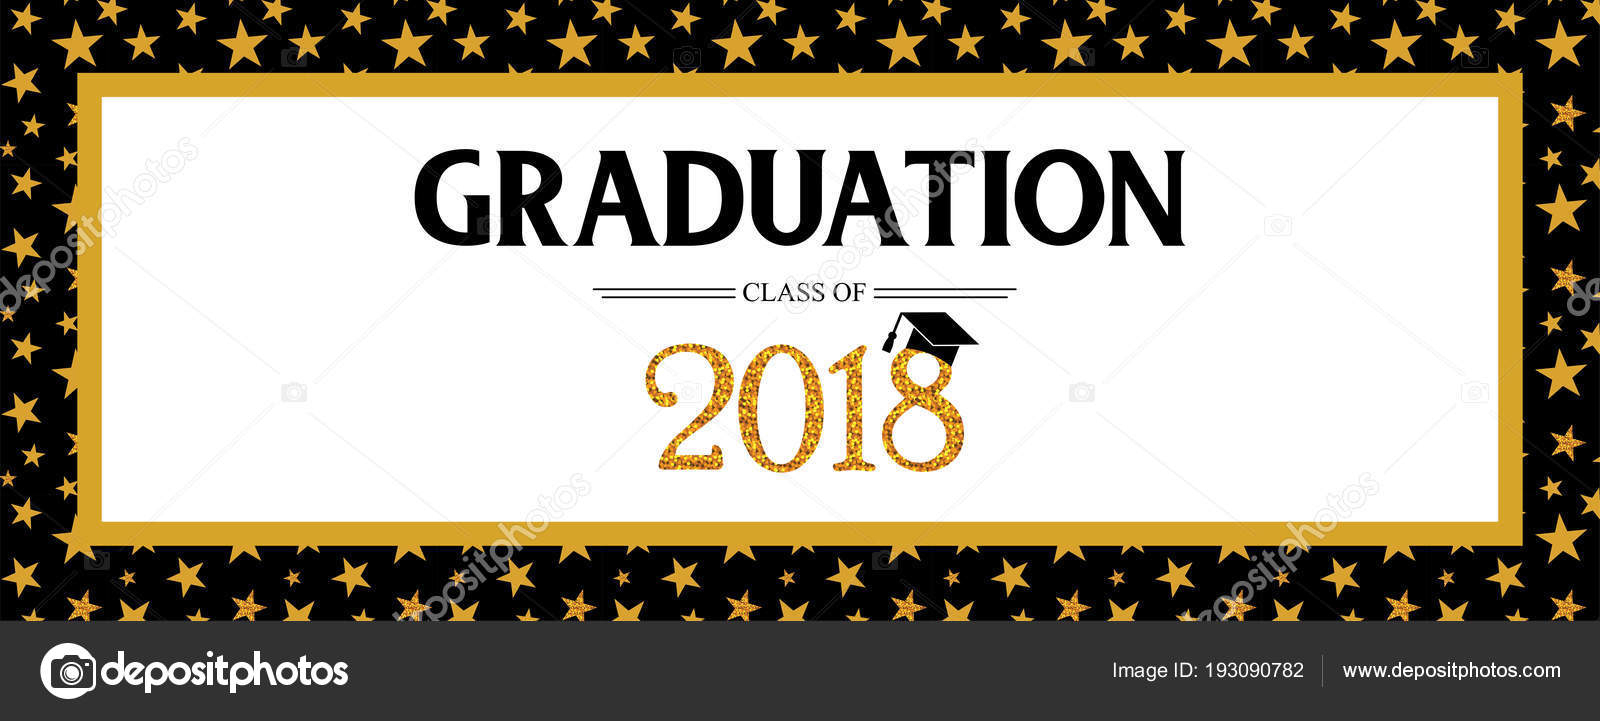 Graduation Banner Template | Graduation Class Of 2018 Inside Graduation Banner Template